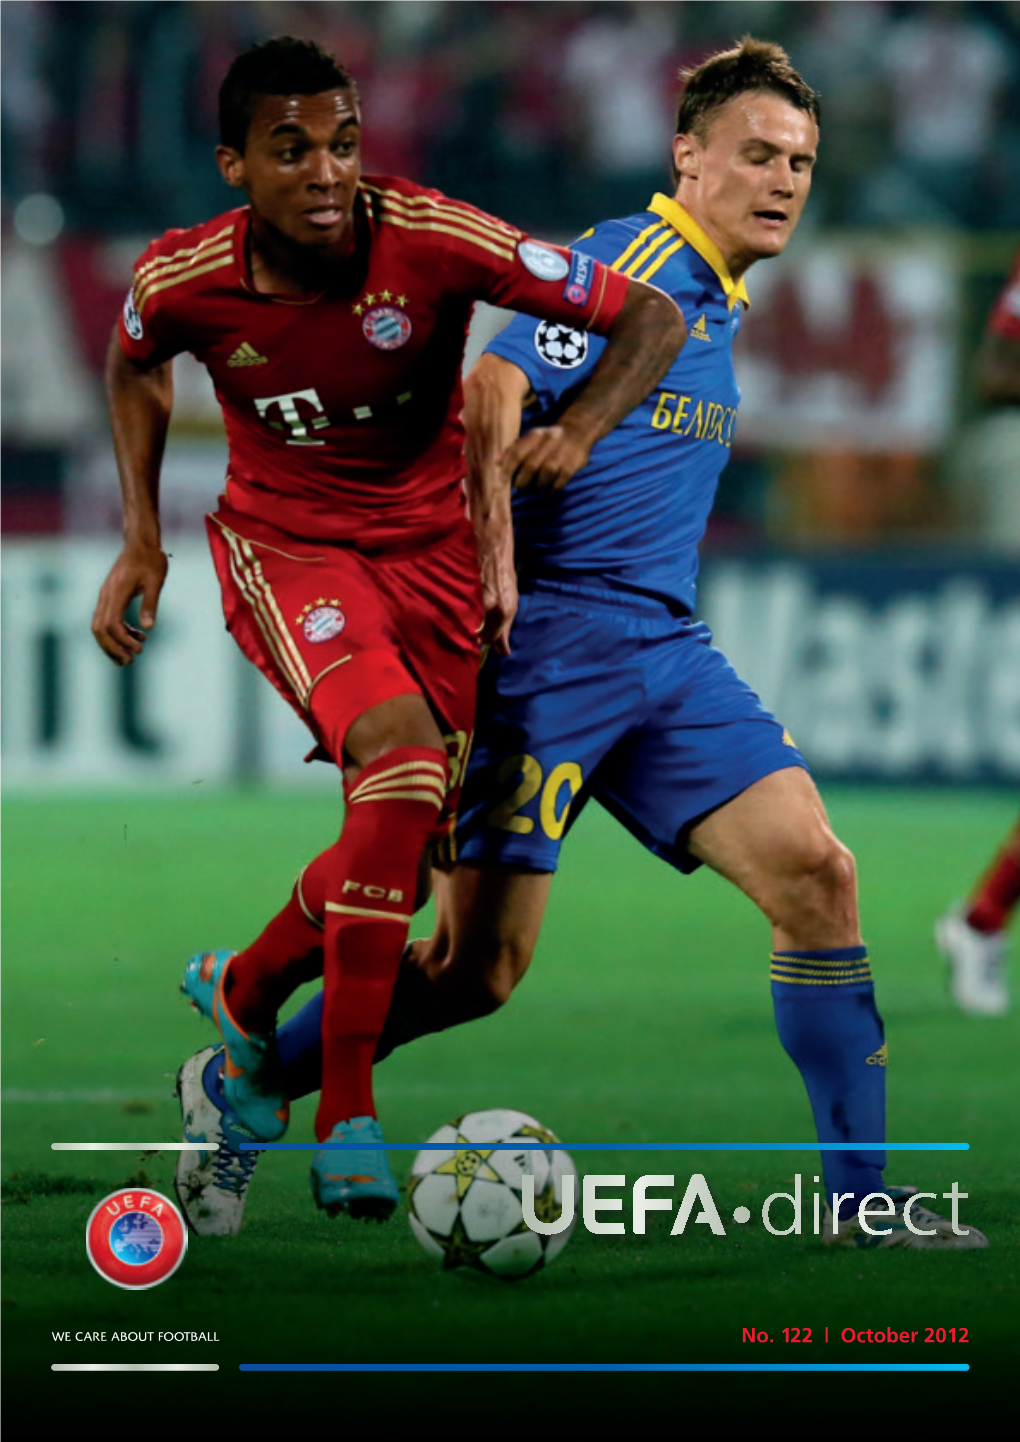 UEFA"Direct #122 (10.2012)